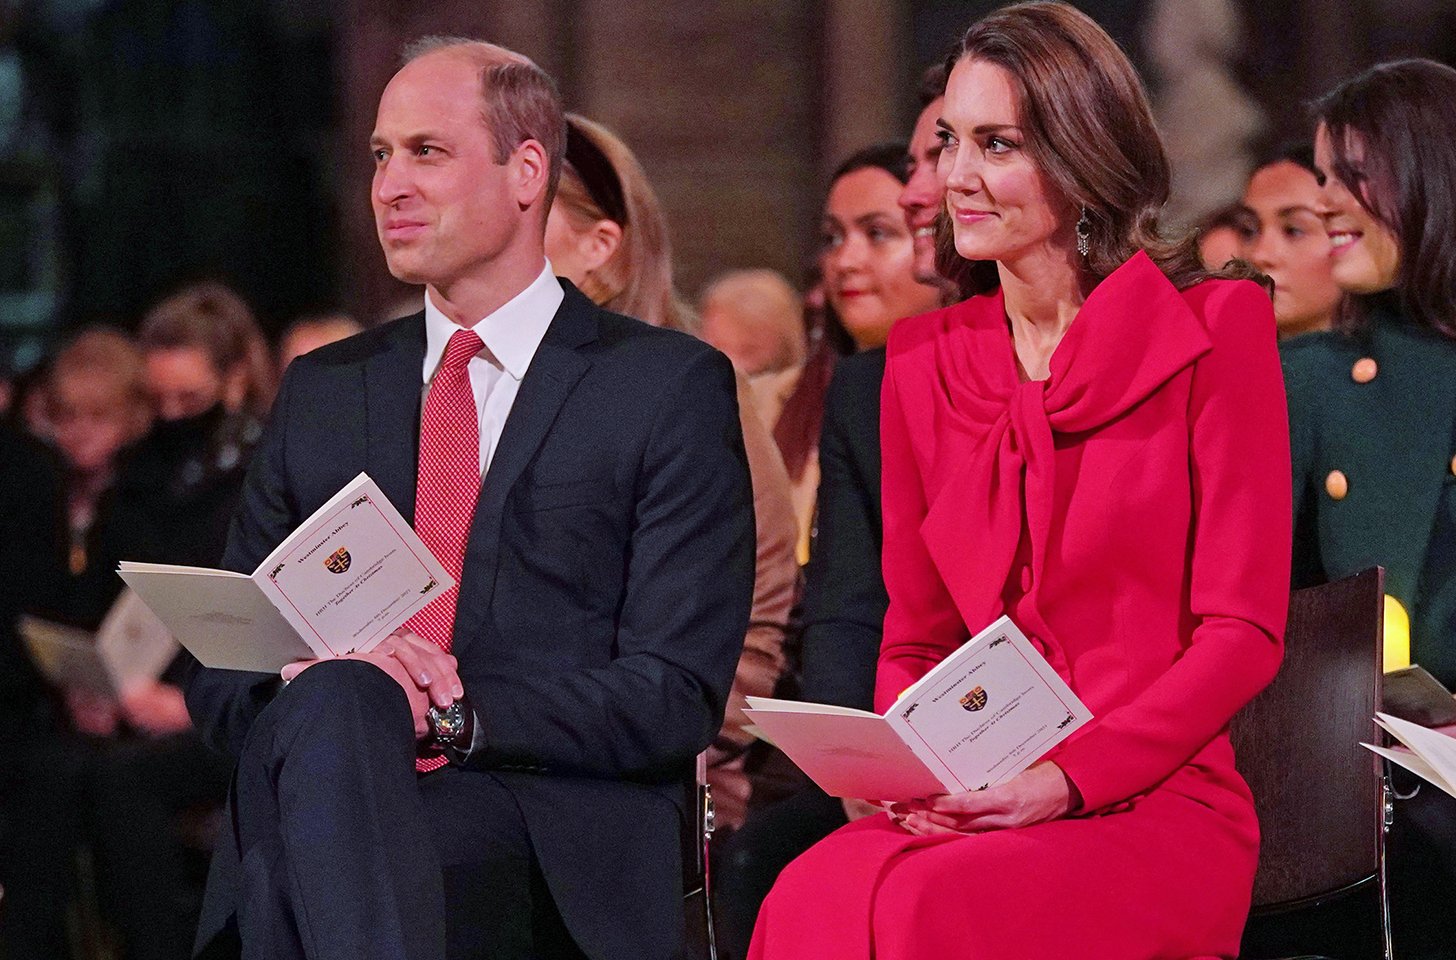 Kate Middleton has another major milestone on the horizon